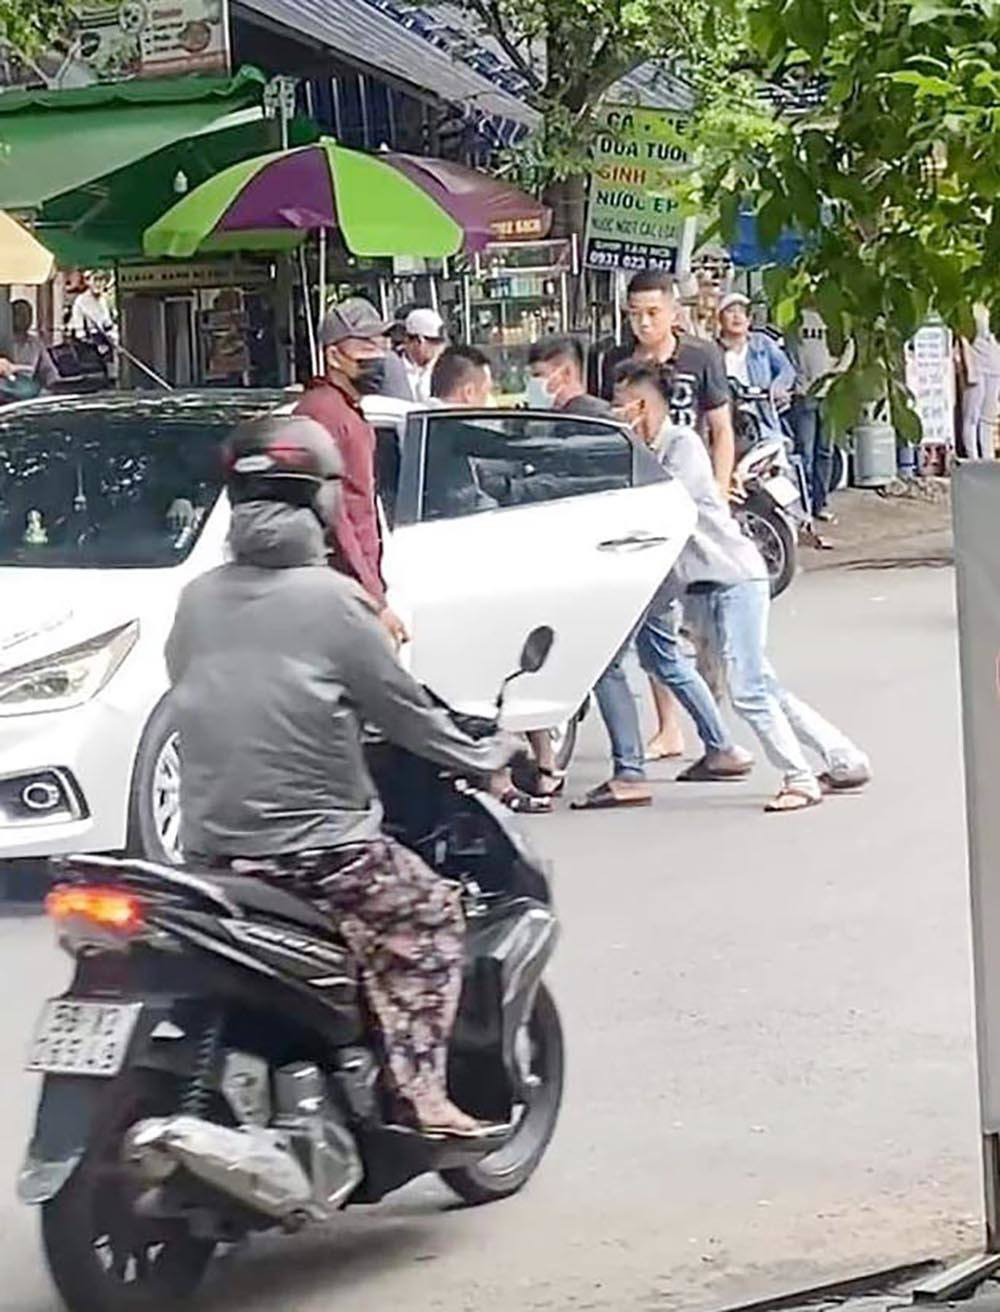 Bắt nhóm giang hồ “bắt cóc” người đàn ông, đập phá xe ô tô tại khu dân cư Cityland ở Sài Gòn - Ảnh 2.